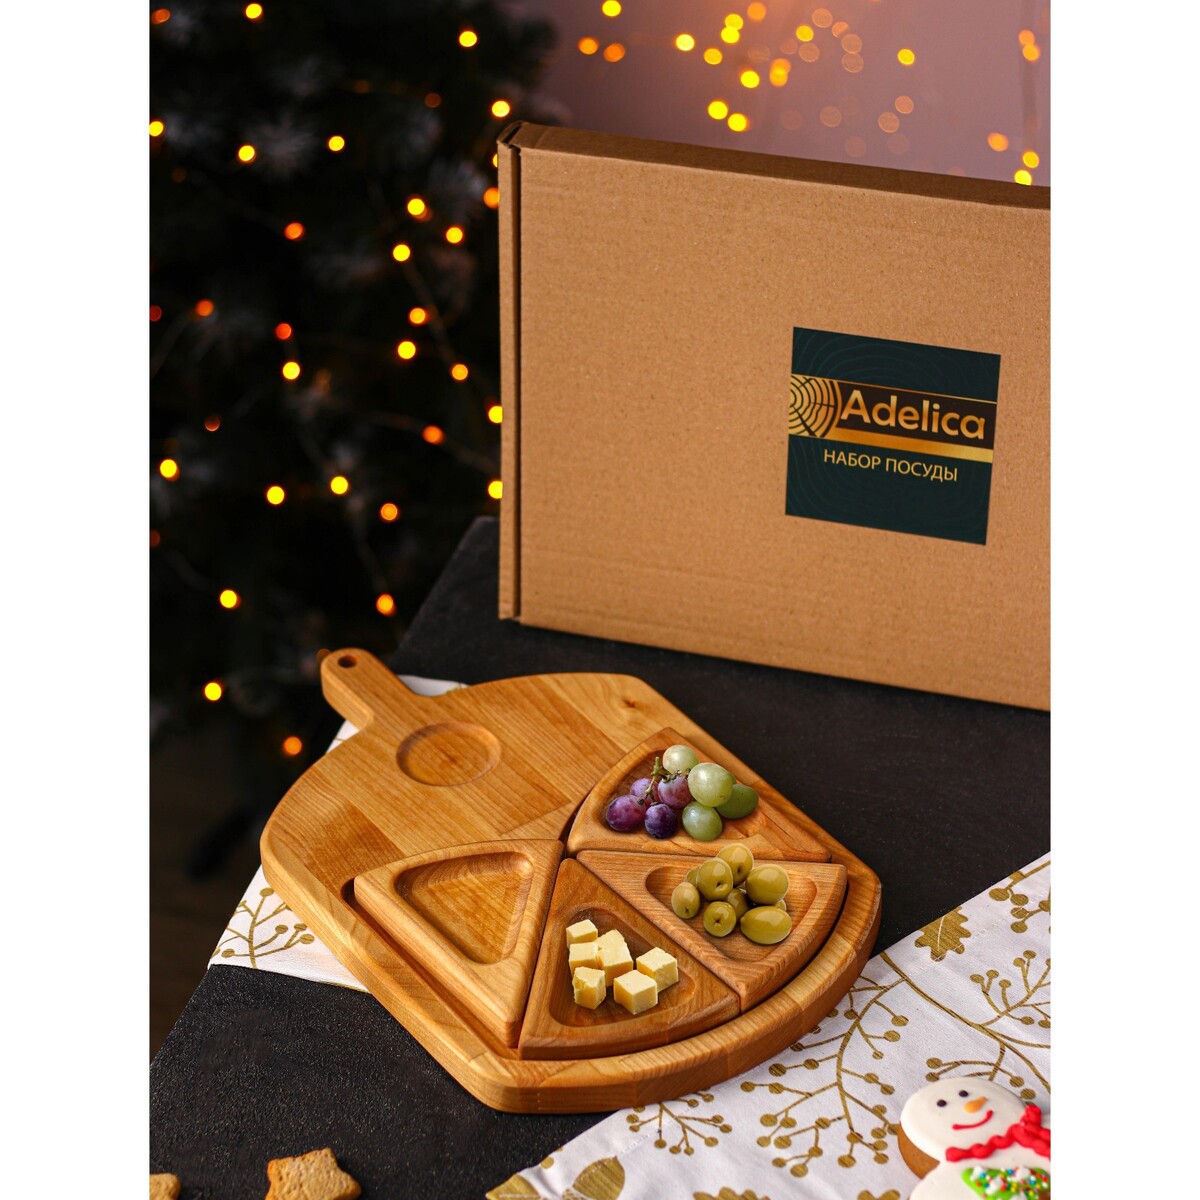 Подарочный набор деревянной посуды adelica набор для творчества master iq2 горячие штучки